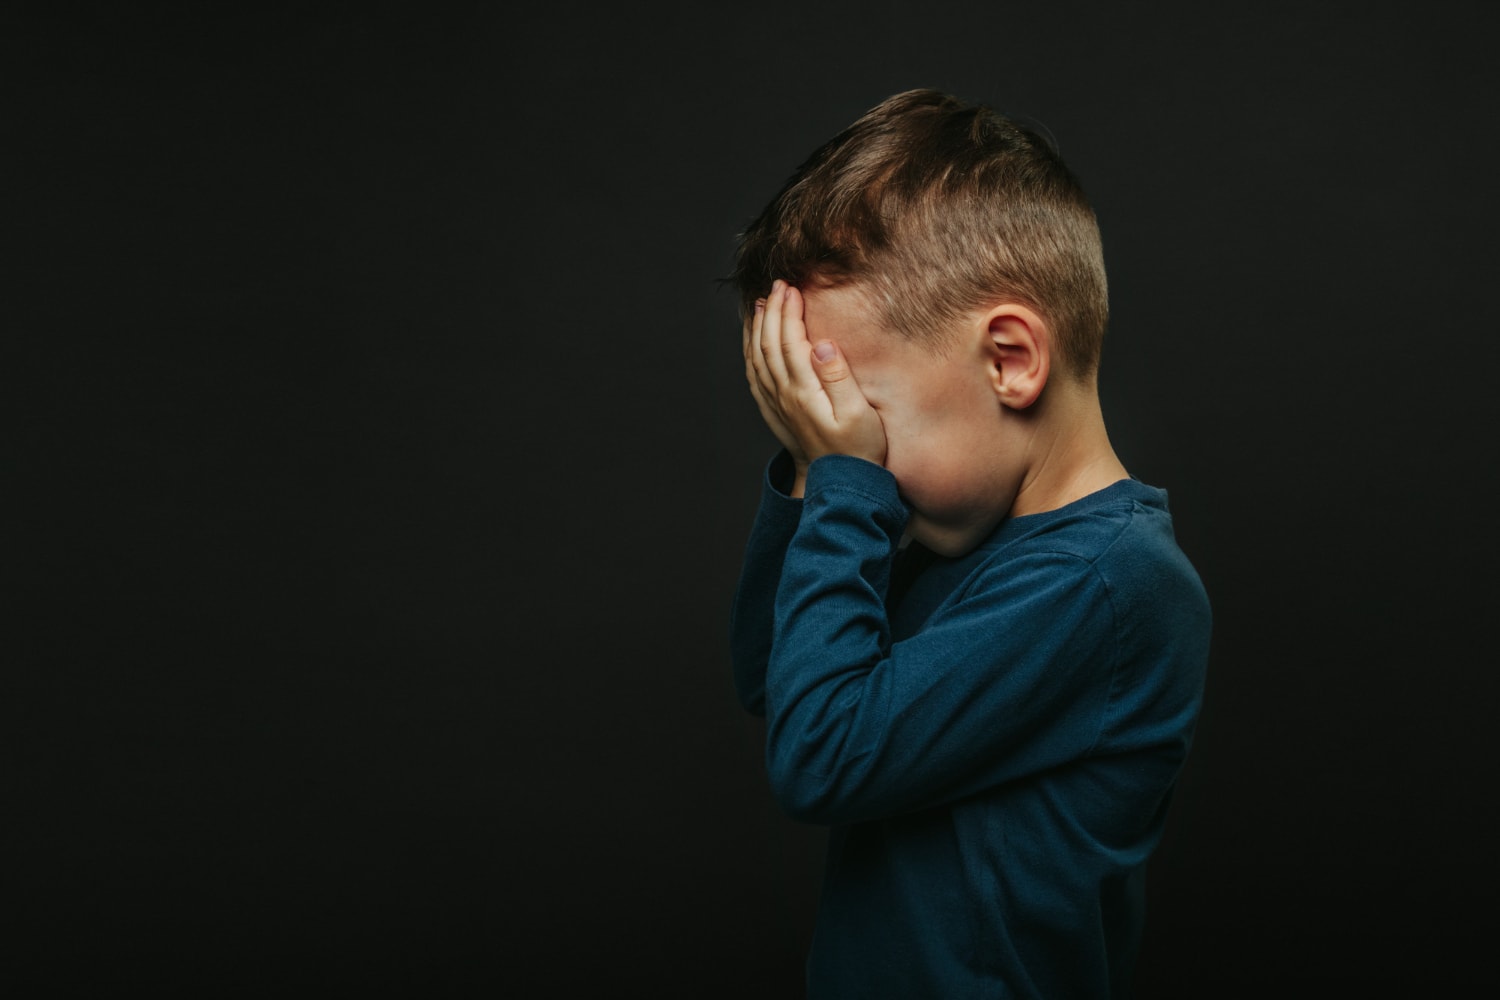 Tú puedes ser el que rompa el ciclo: 9 maneras de sanar después de un trauma infantil